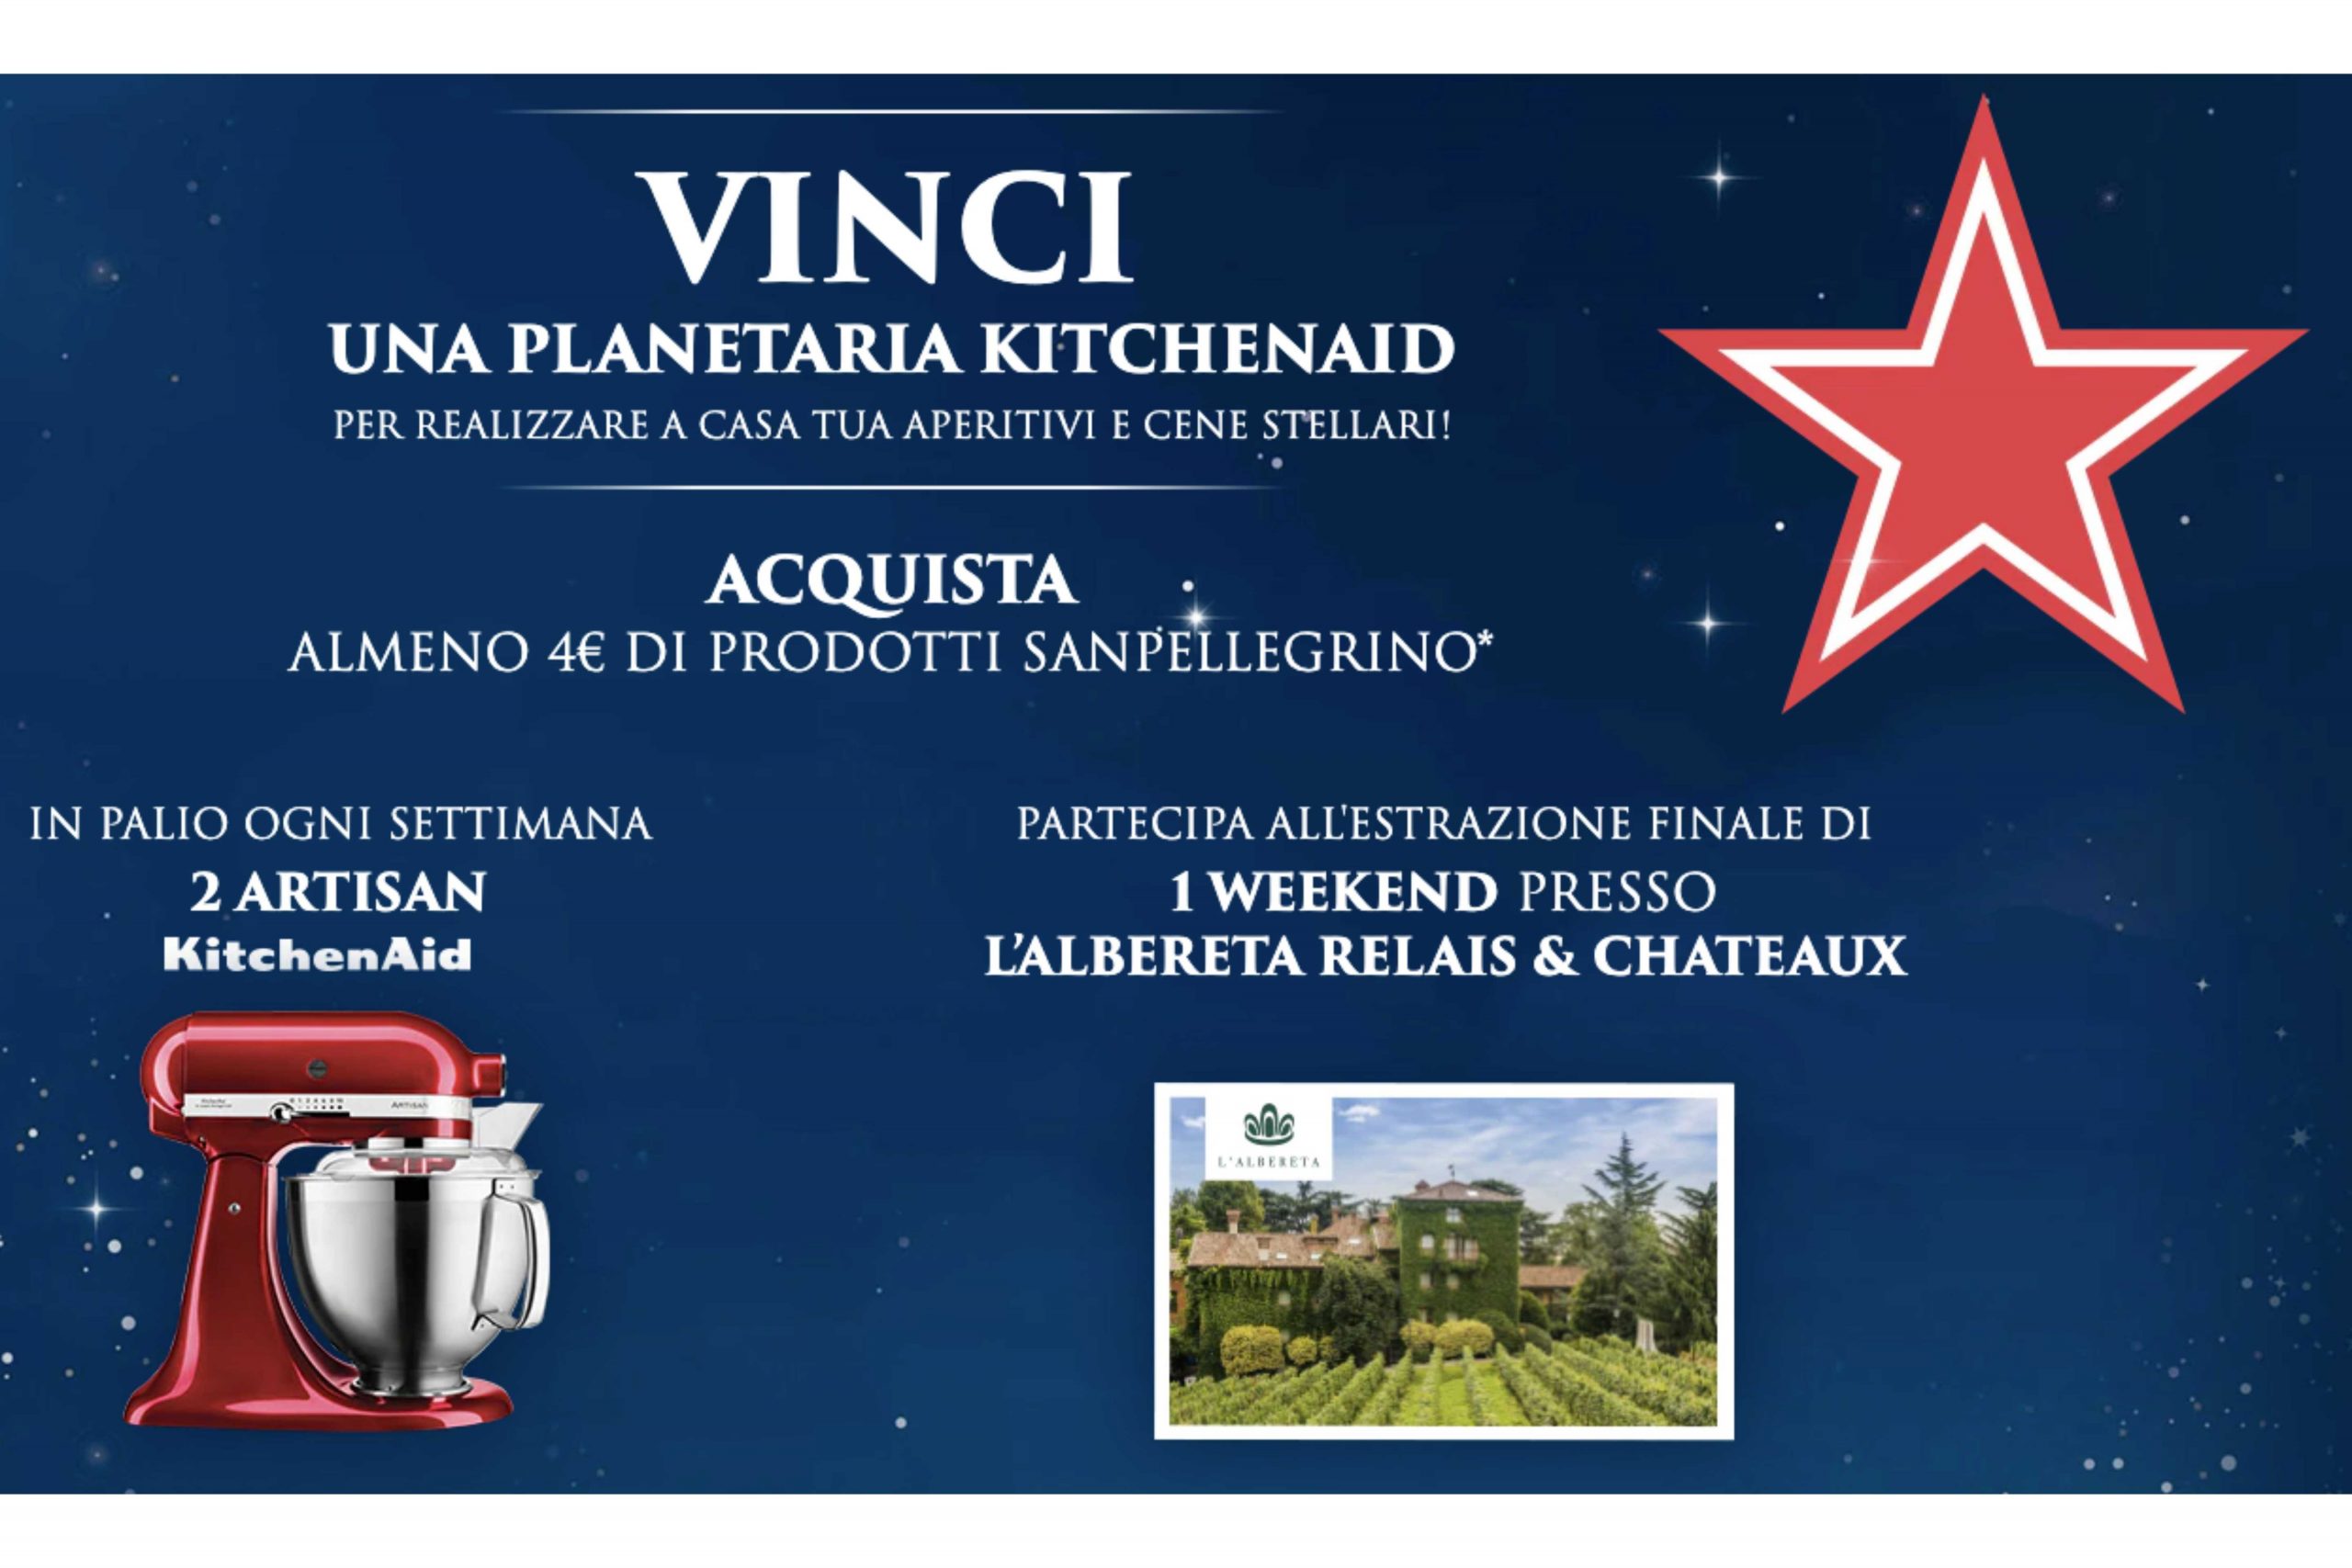 Concorso “Vinci un’esperienza stellare” San Pellegrino e Sanbitter: vinci una Planetaria Artisan KitchenAid e 1 weekend presso l’Albereta Relais Chateaux